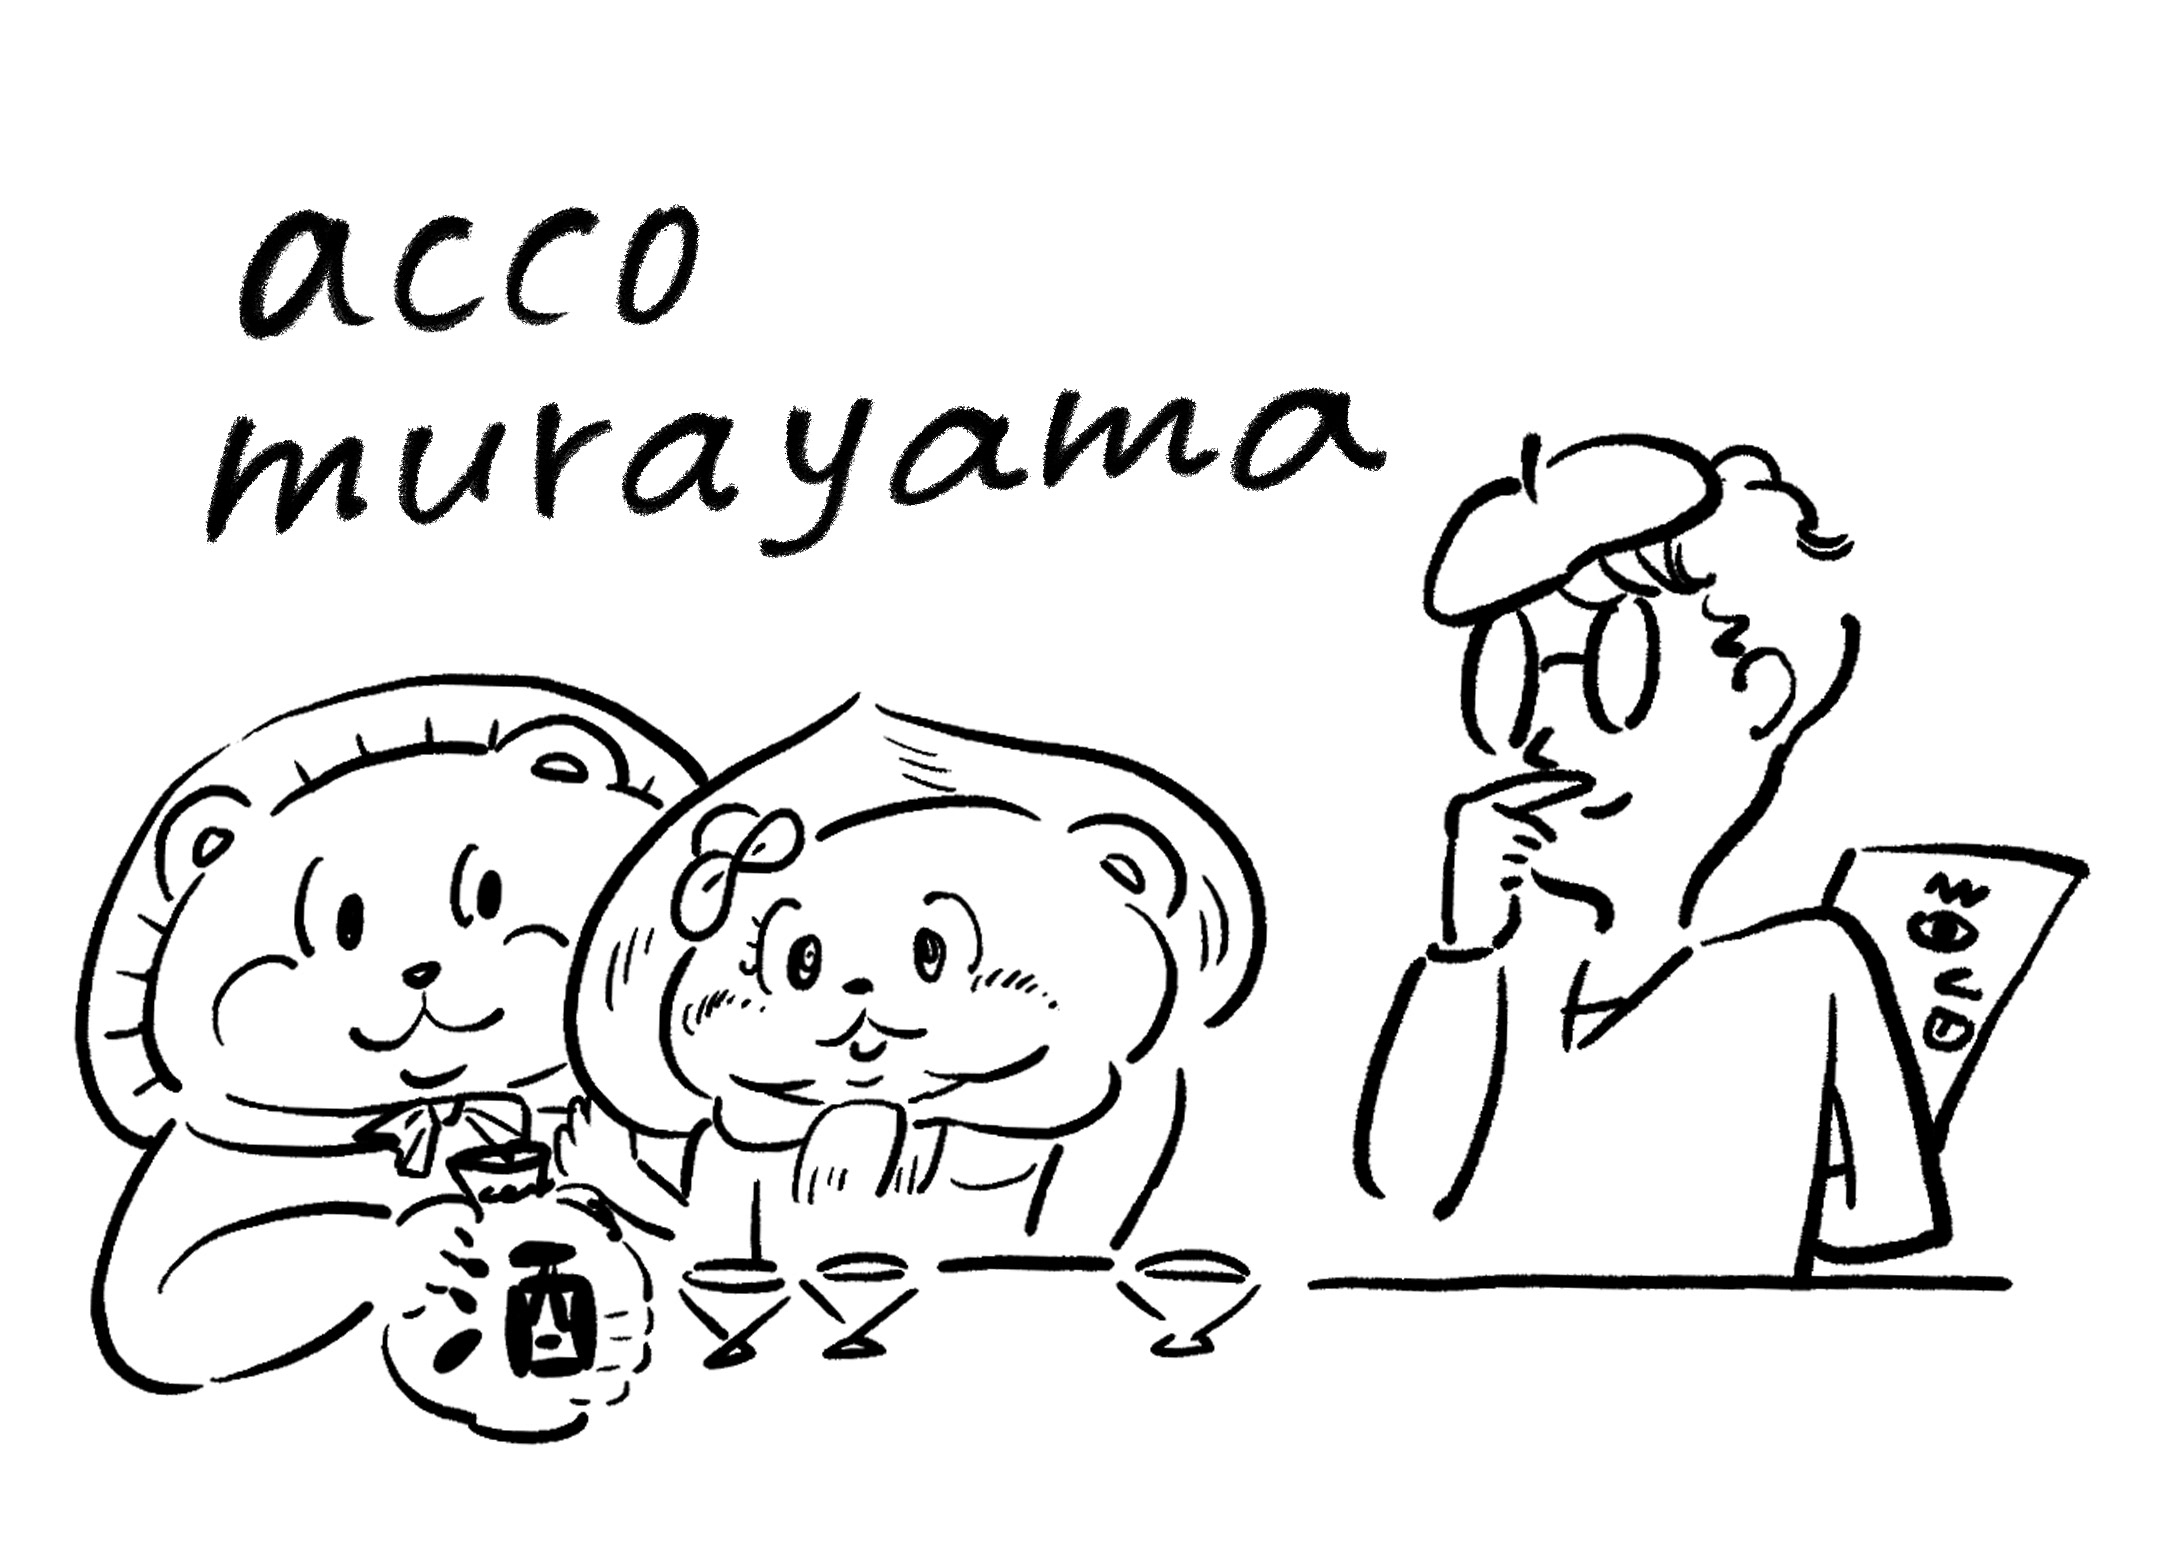 acco murayama